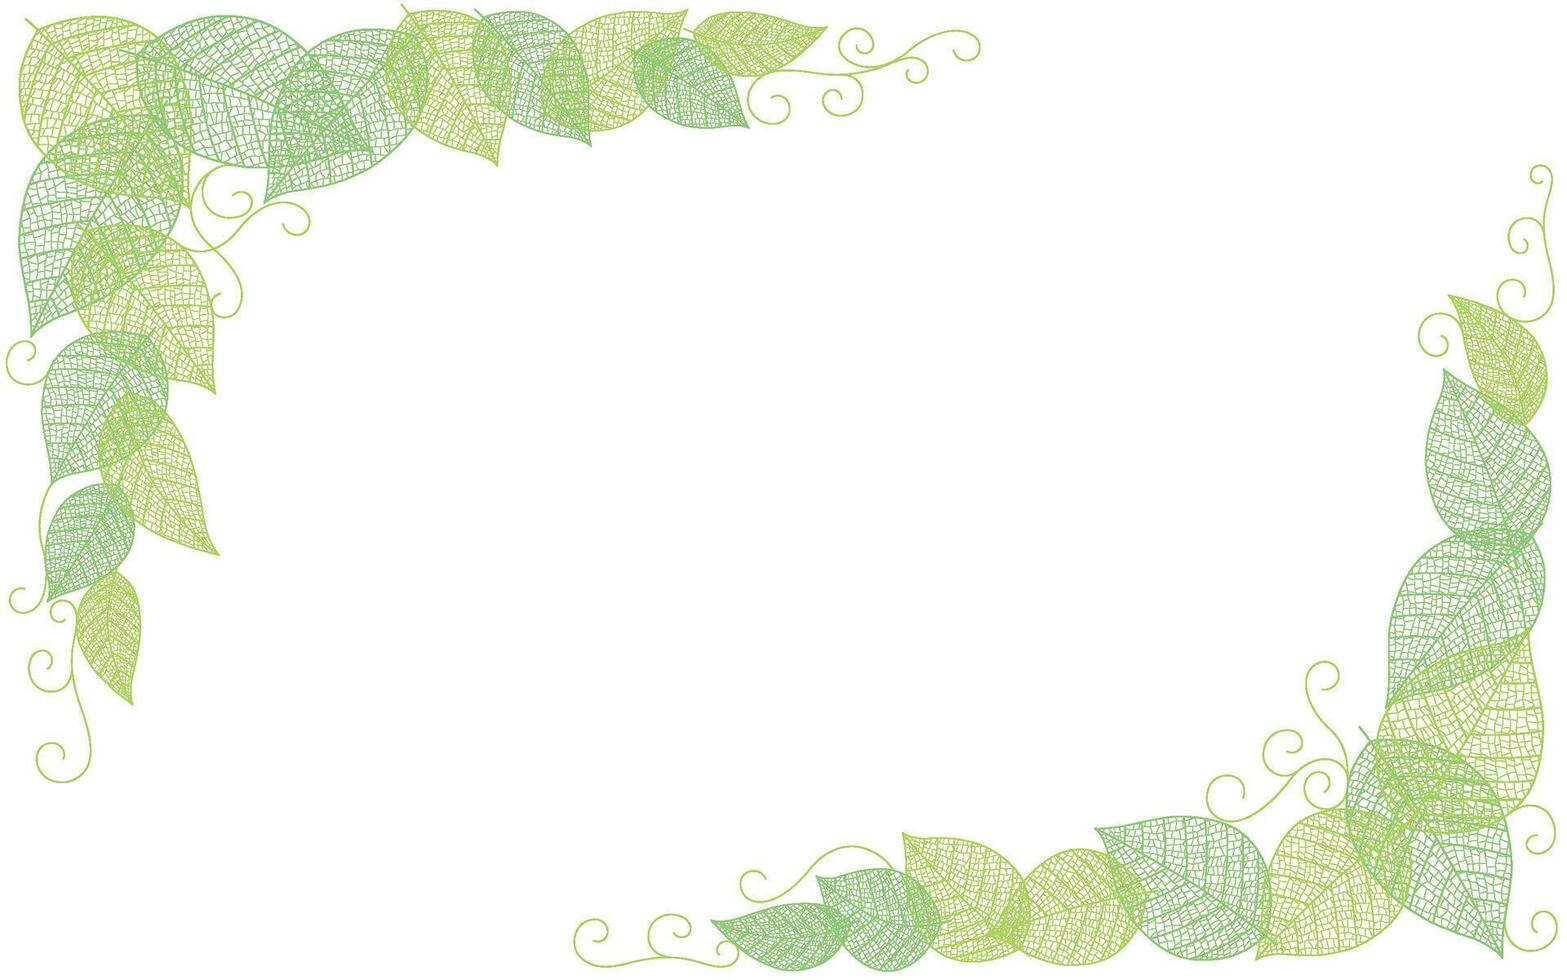 vektor ram illustration med blad vener silhuett mönster isolerat på en vit bakgrund.